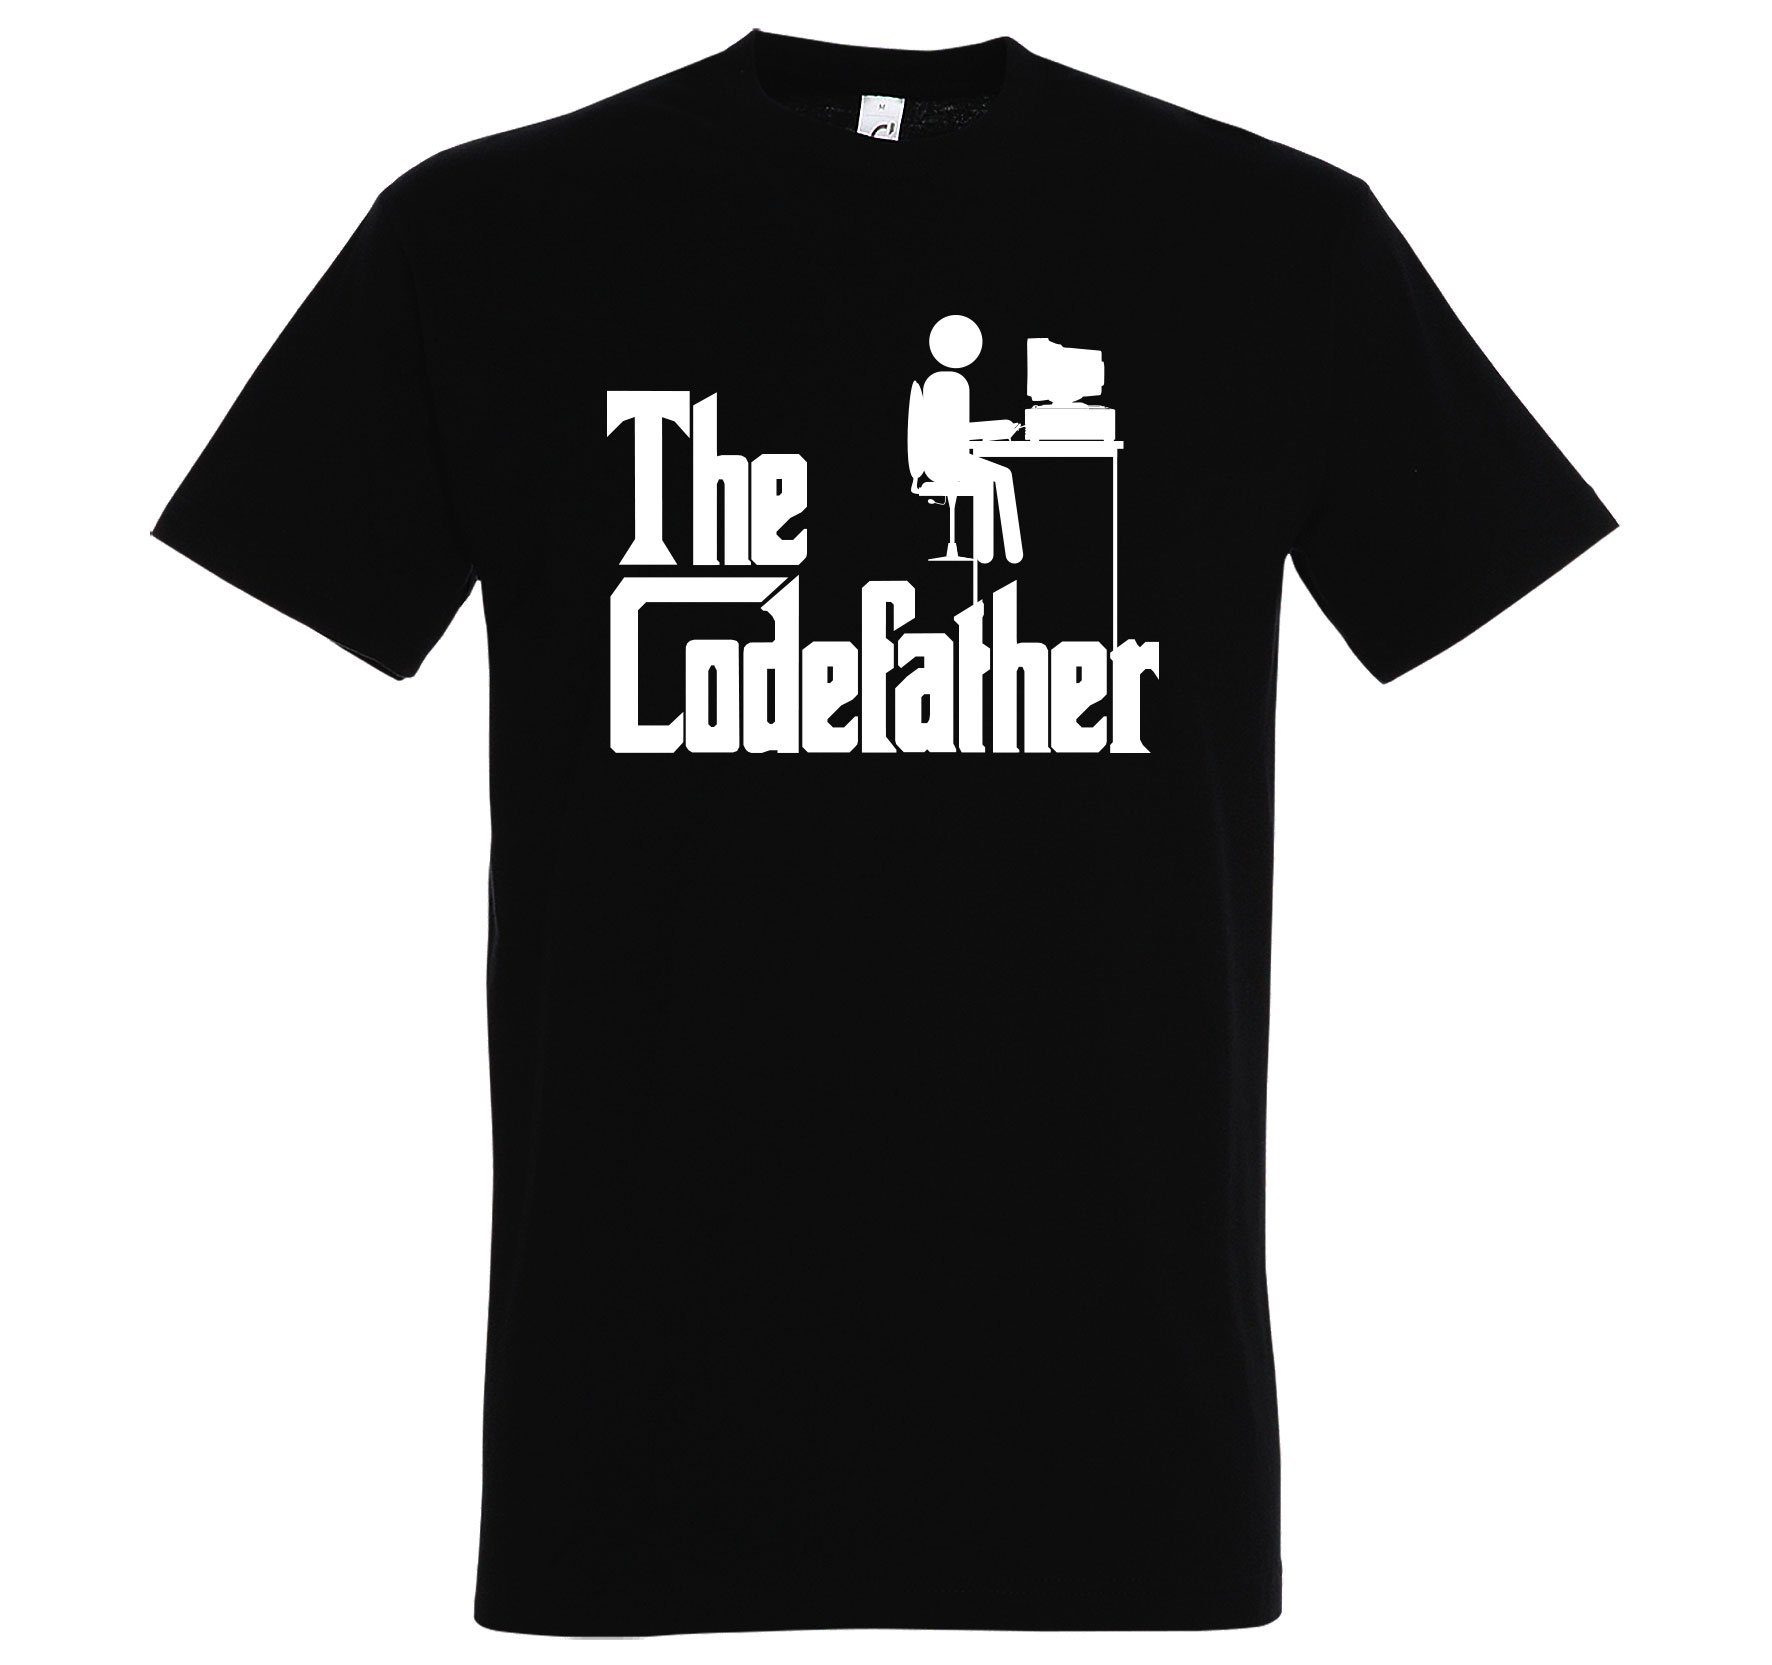 Schwarz mit lustigem Codefather Designz T-Shirt Herren T-Shirt Frontprint Youth The